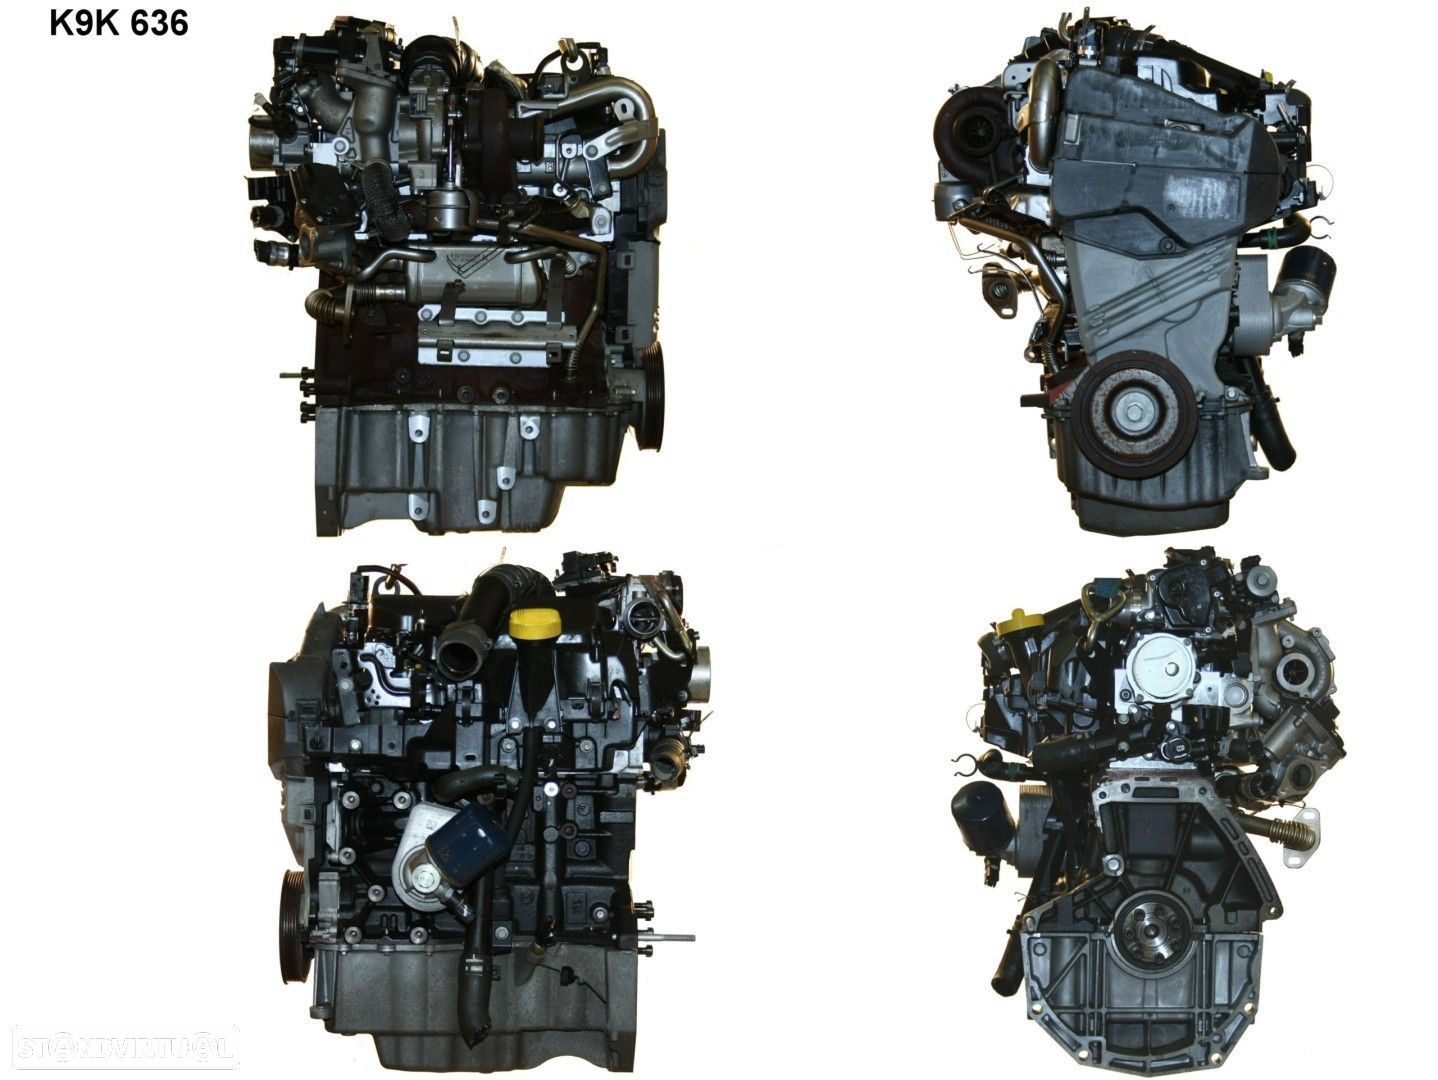 Motor Completo  Usado NISSAN JUKE 1.5 dCi K9K 636 - 1